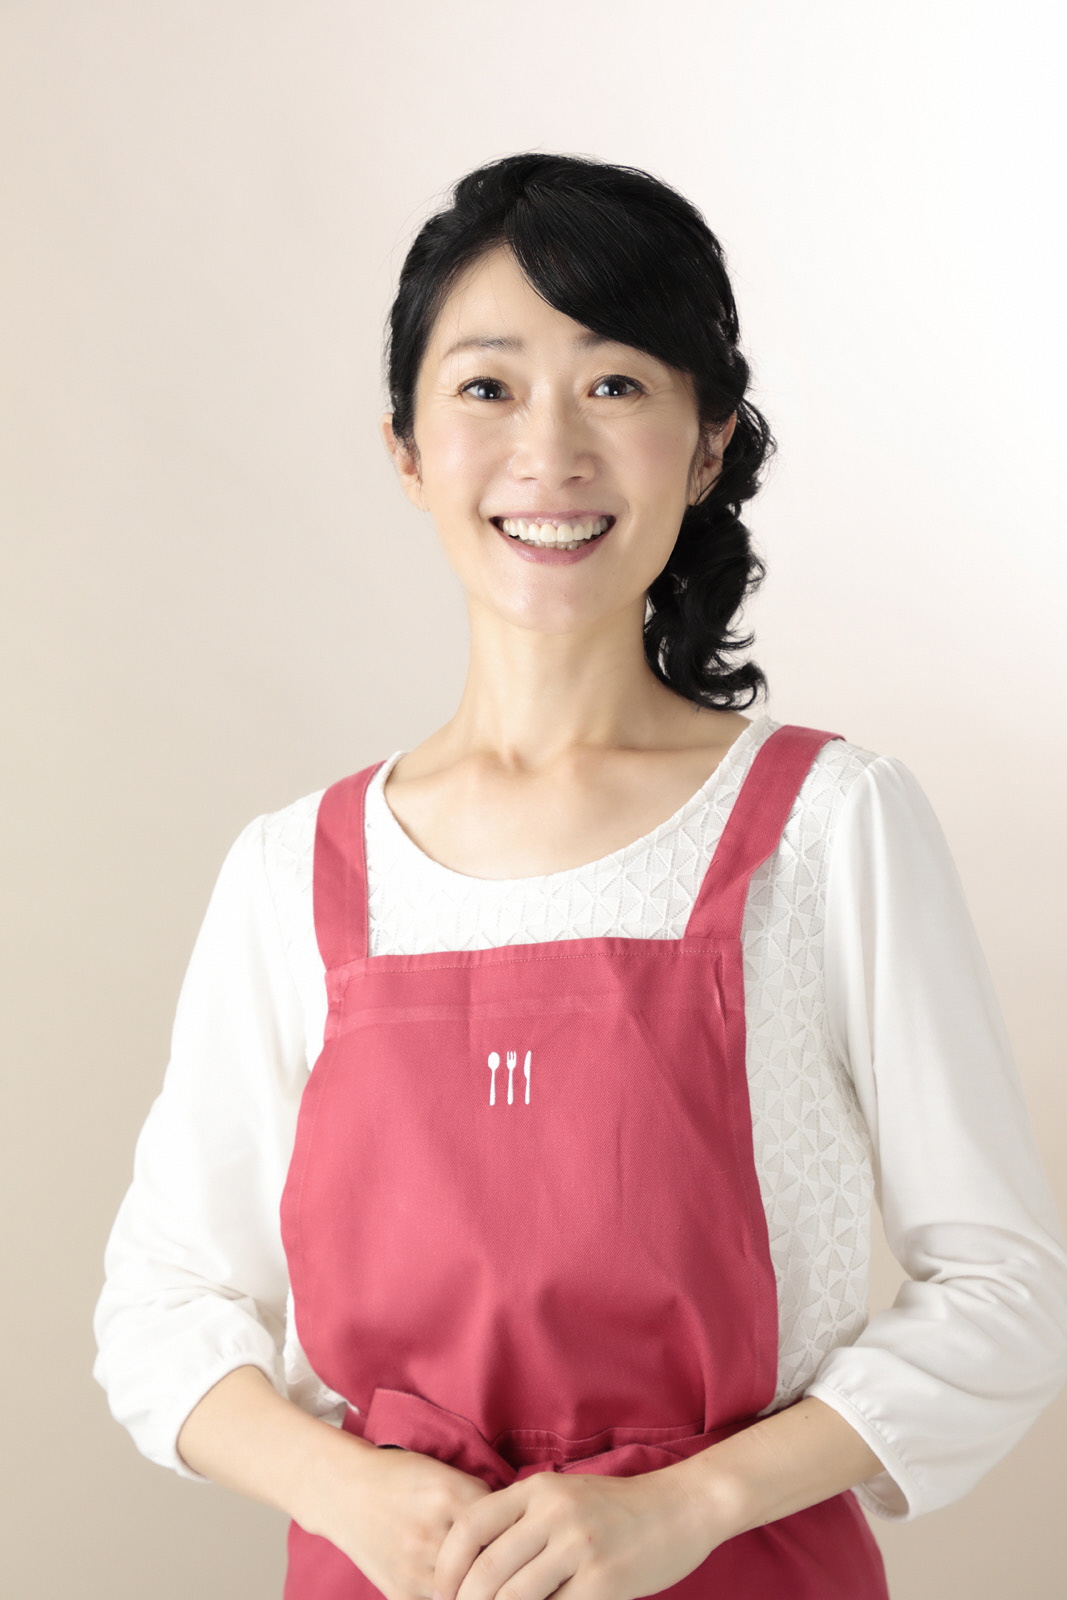 株式会社オフィスRM代表取締役、管理栄養士の今泉 マユ子さんの写真